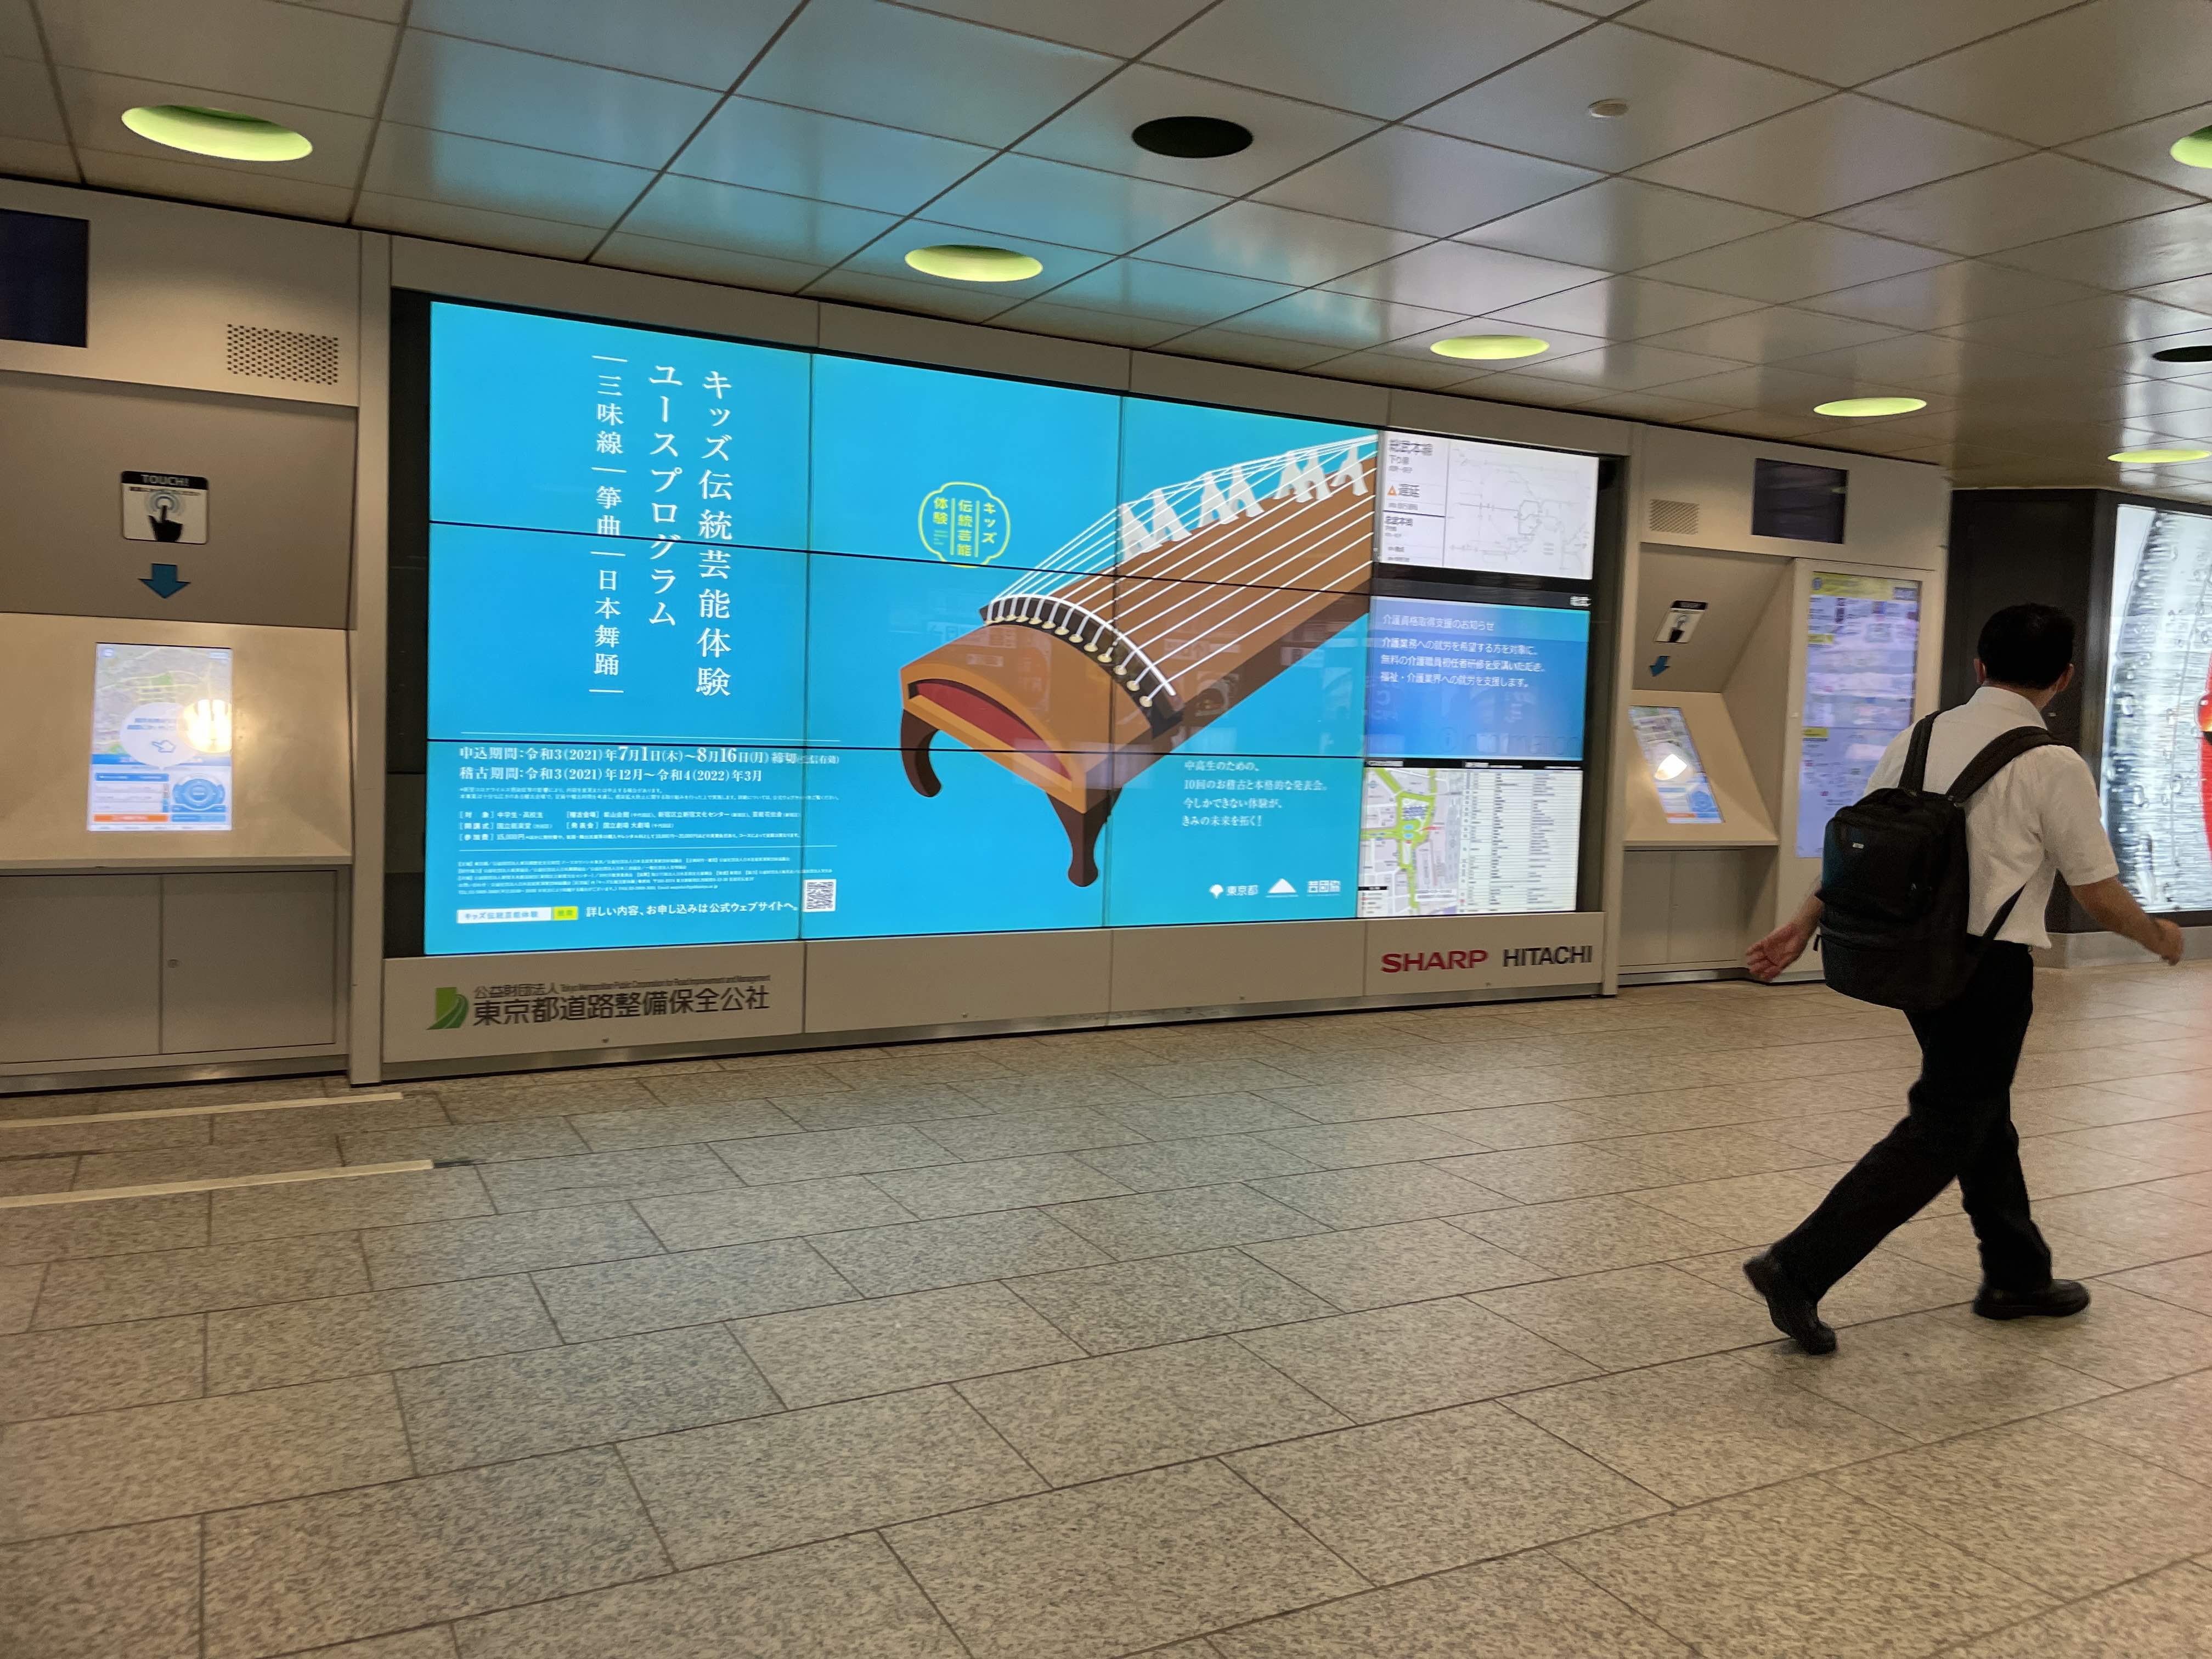 今年も新宿駅周辺にデジタルサイネージが出現 キッズ伝統芸能体験 日本芸能実演家団体協議会 芸団協